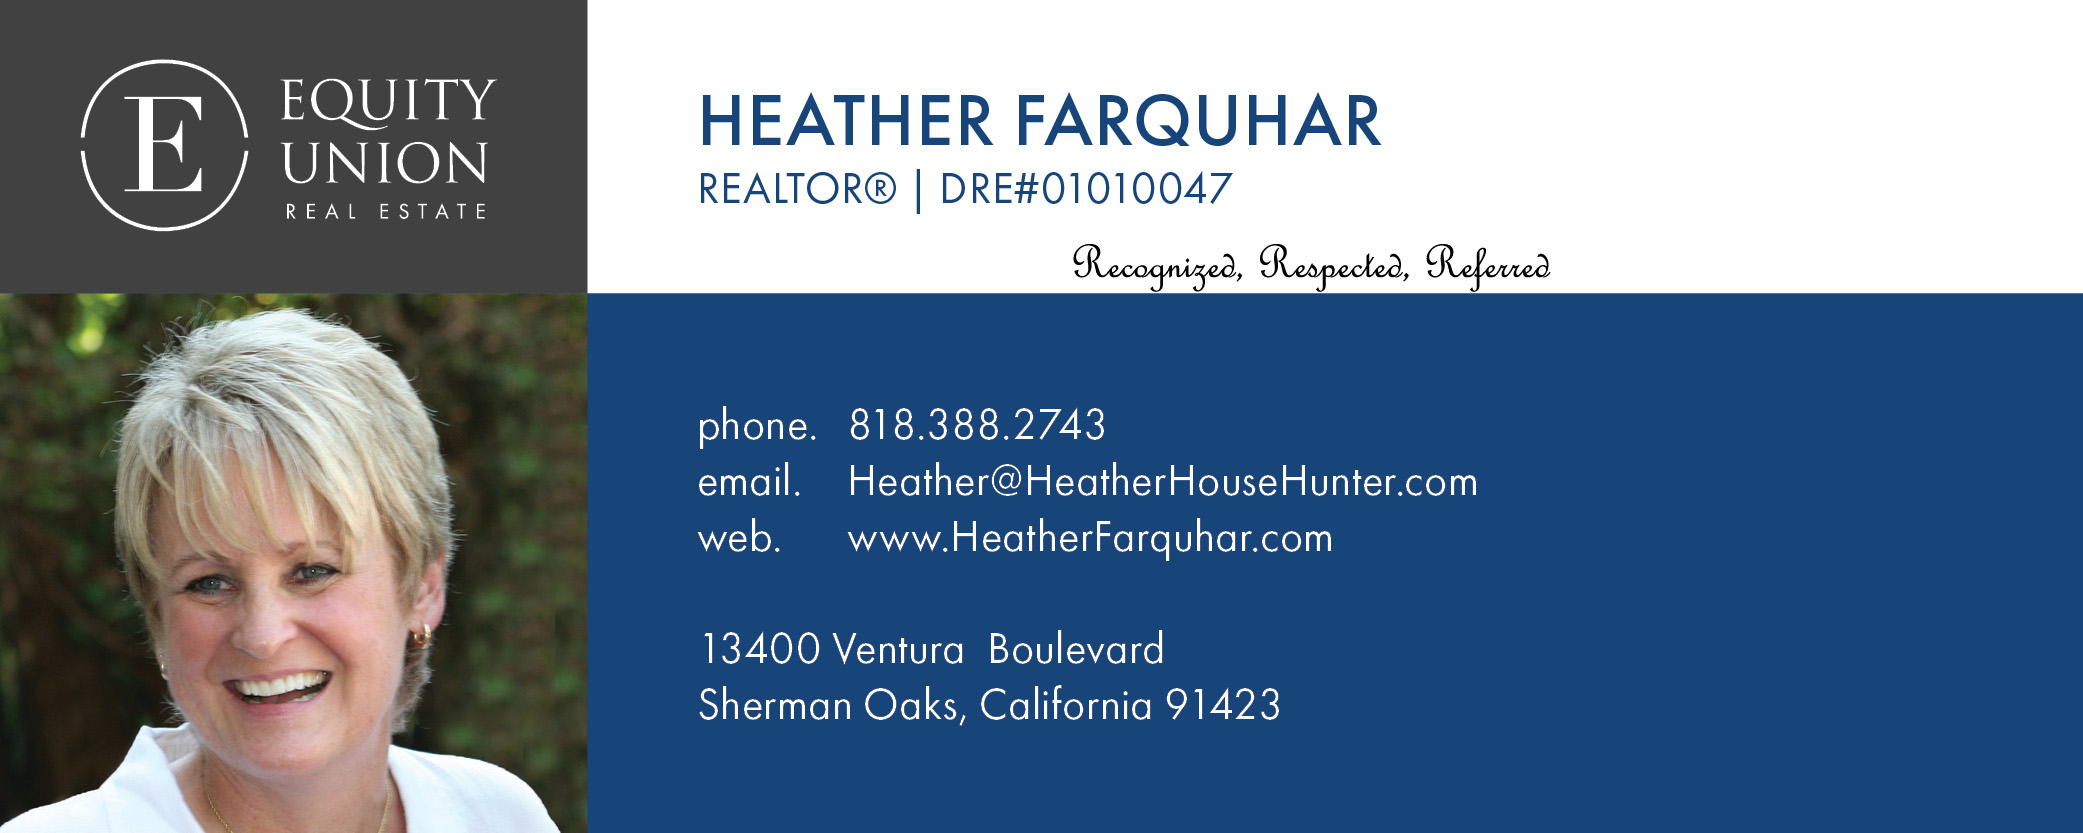 Oak Pointe Condos Heather Farquhar Realtor